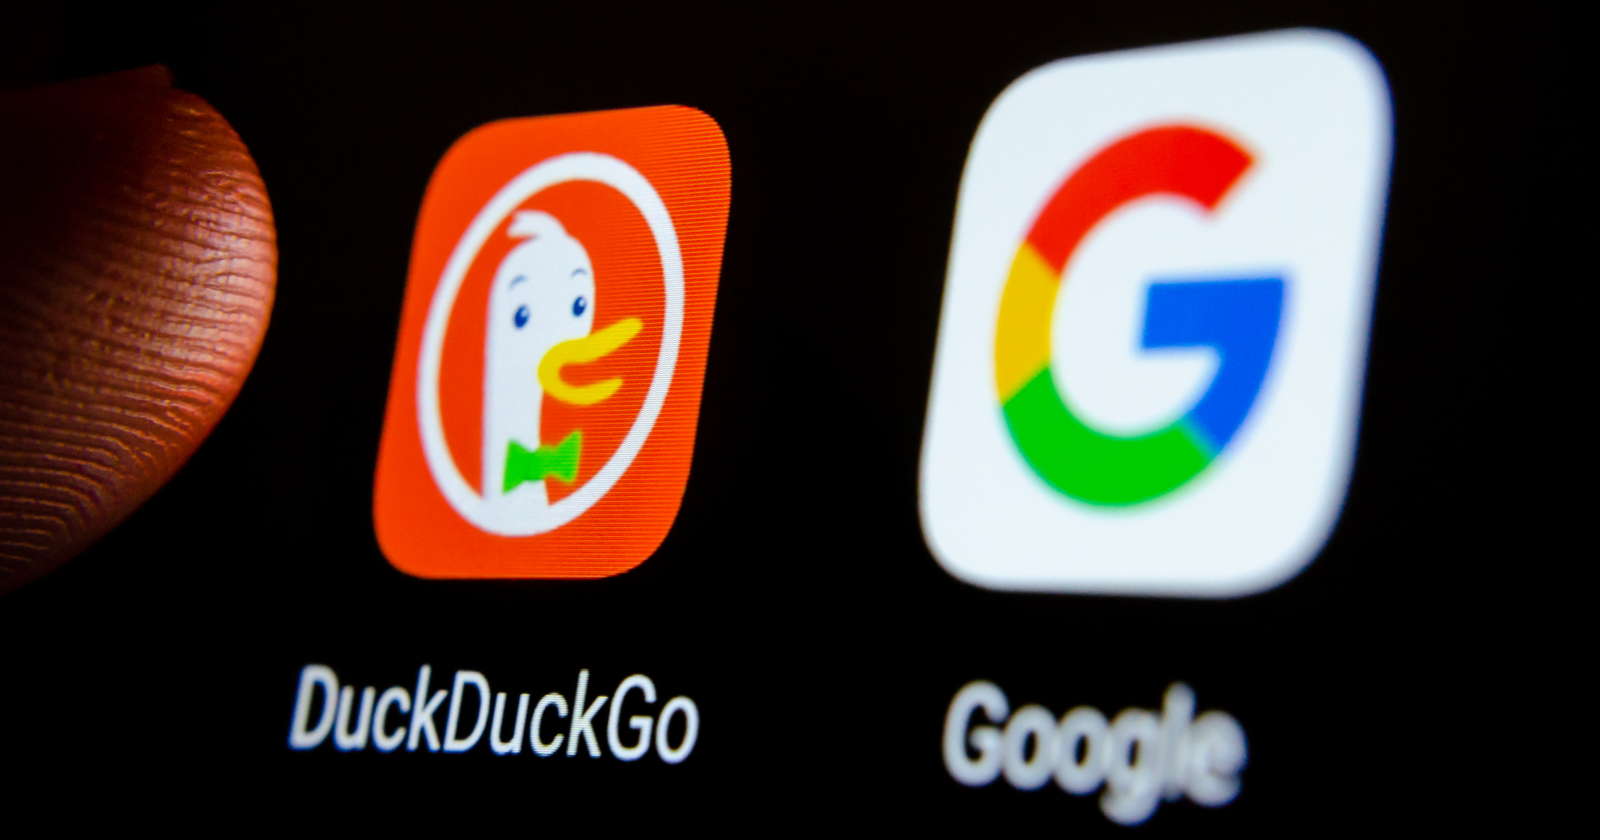 DuckDuckGo Vs. Google